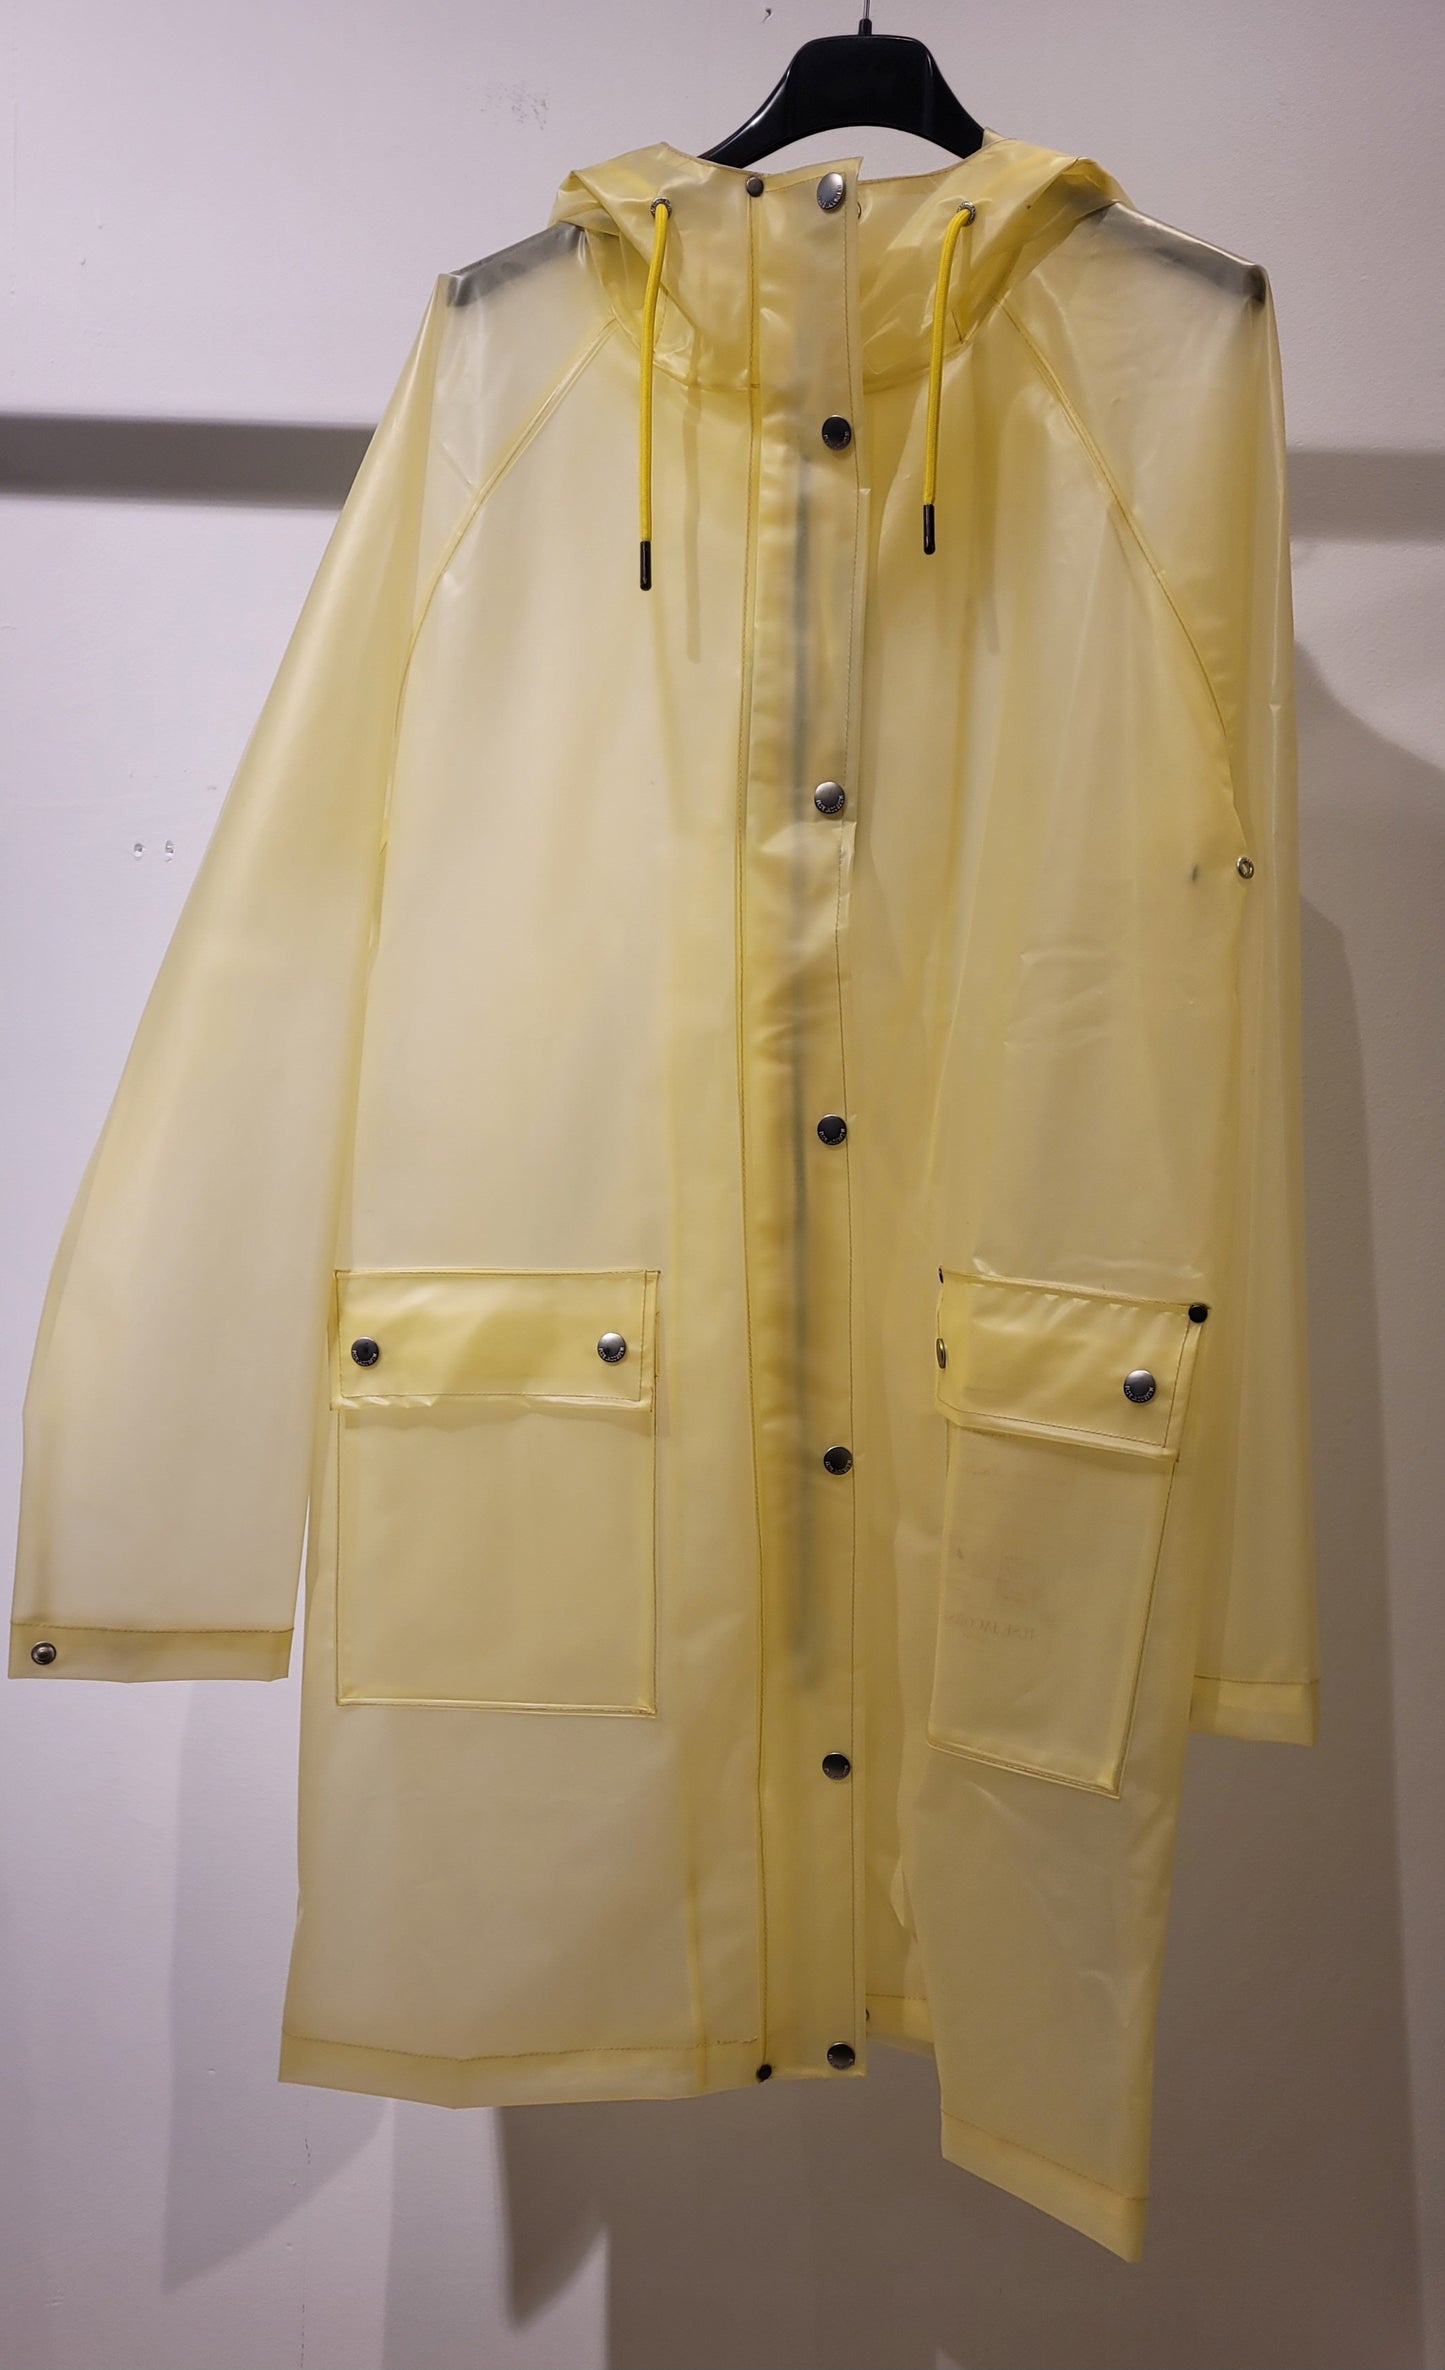 Ilse Jacobsen transparent raincoat